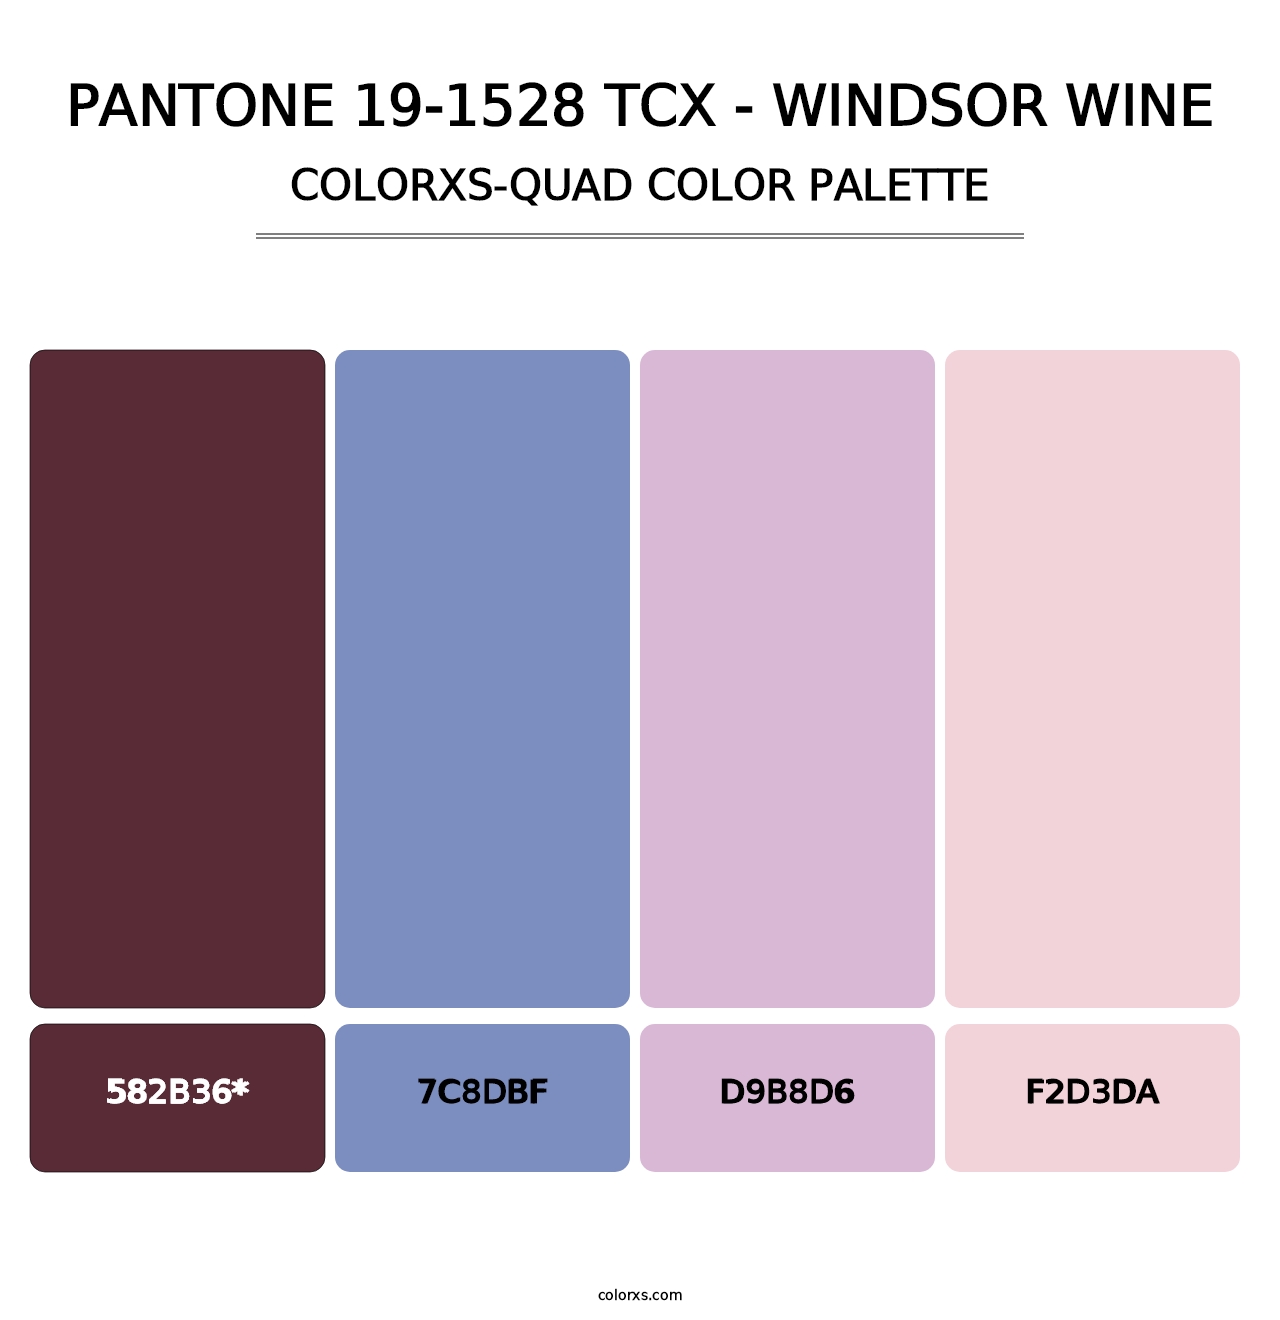 PANTONE 19-1528 TCX - Windsor Wine - Colorxs Quad Palette